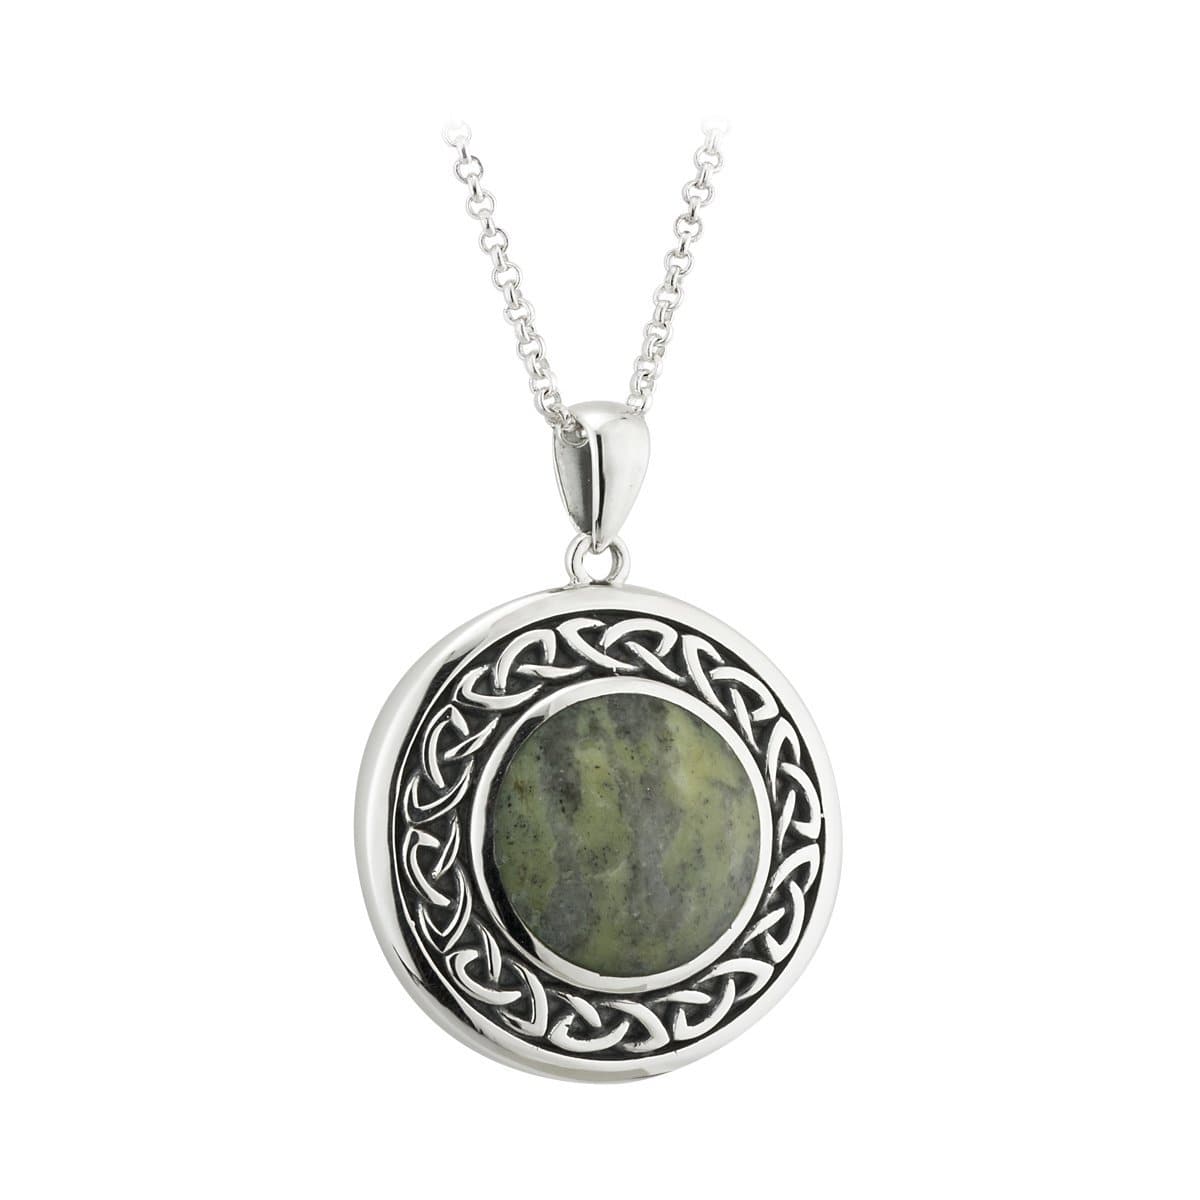 Connemara Marble Necklace 7/8" round - Ireland's Gemstone Gift on 18 Chain